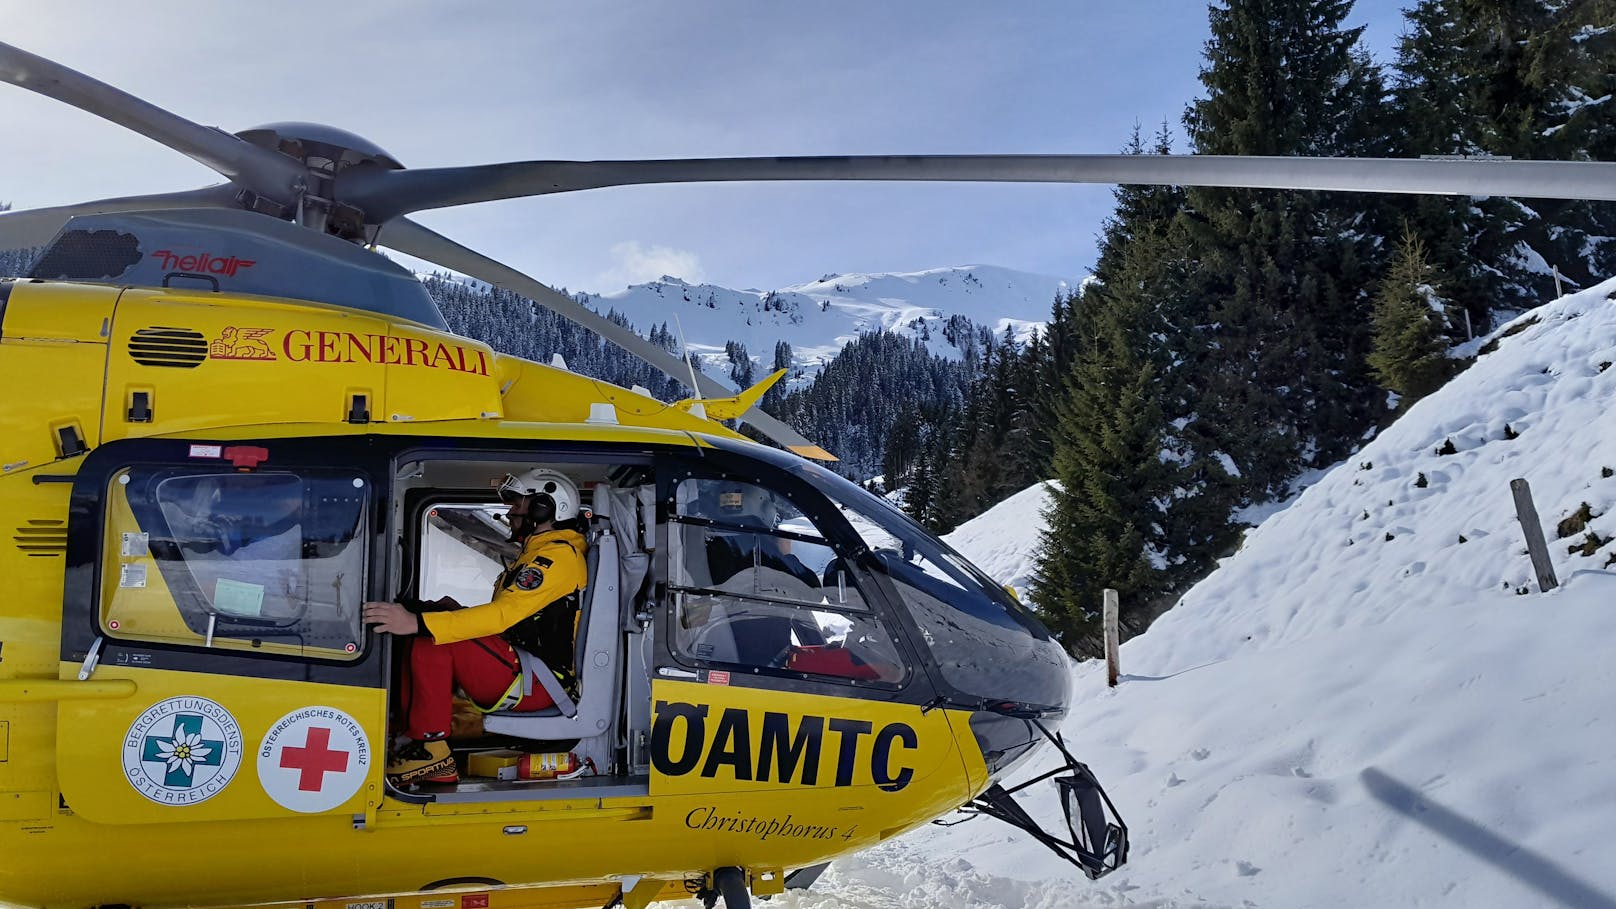 Unerfahrene Alpinisten per Heli aus Bergnot gerettet